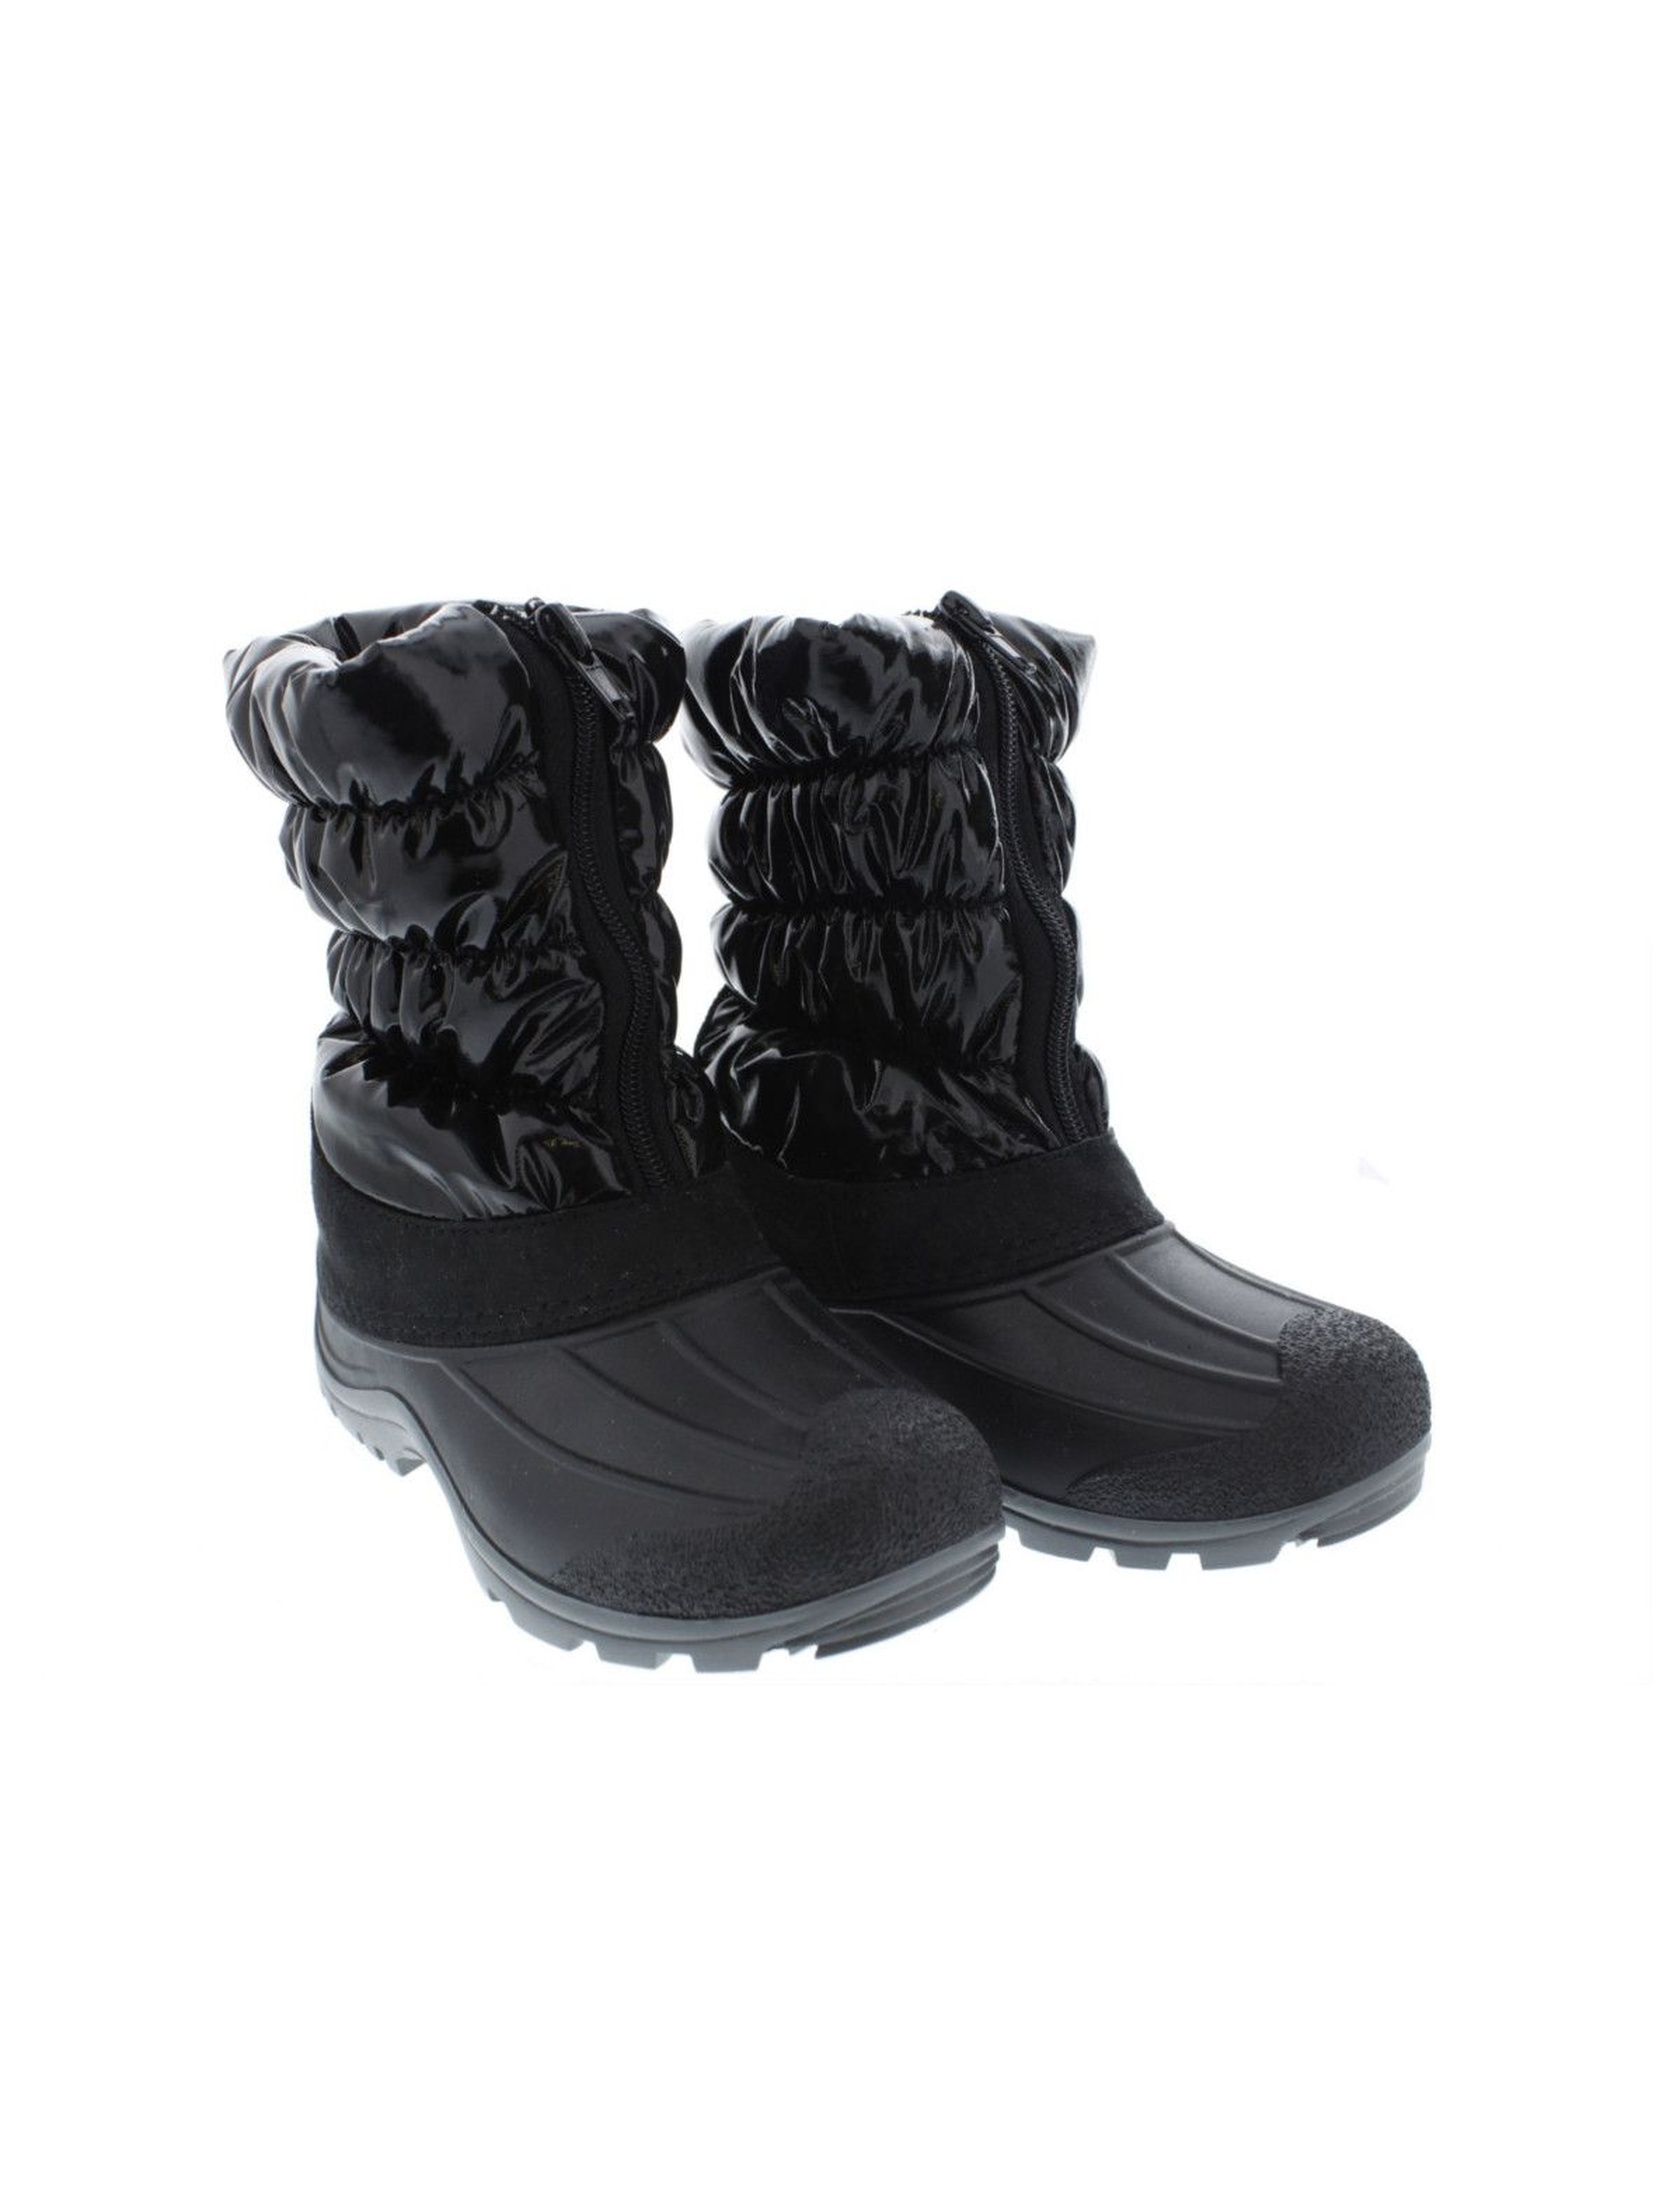 Buty zimowe dziewczęce czarne ocieplane z podeszwą antypoślizgową